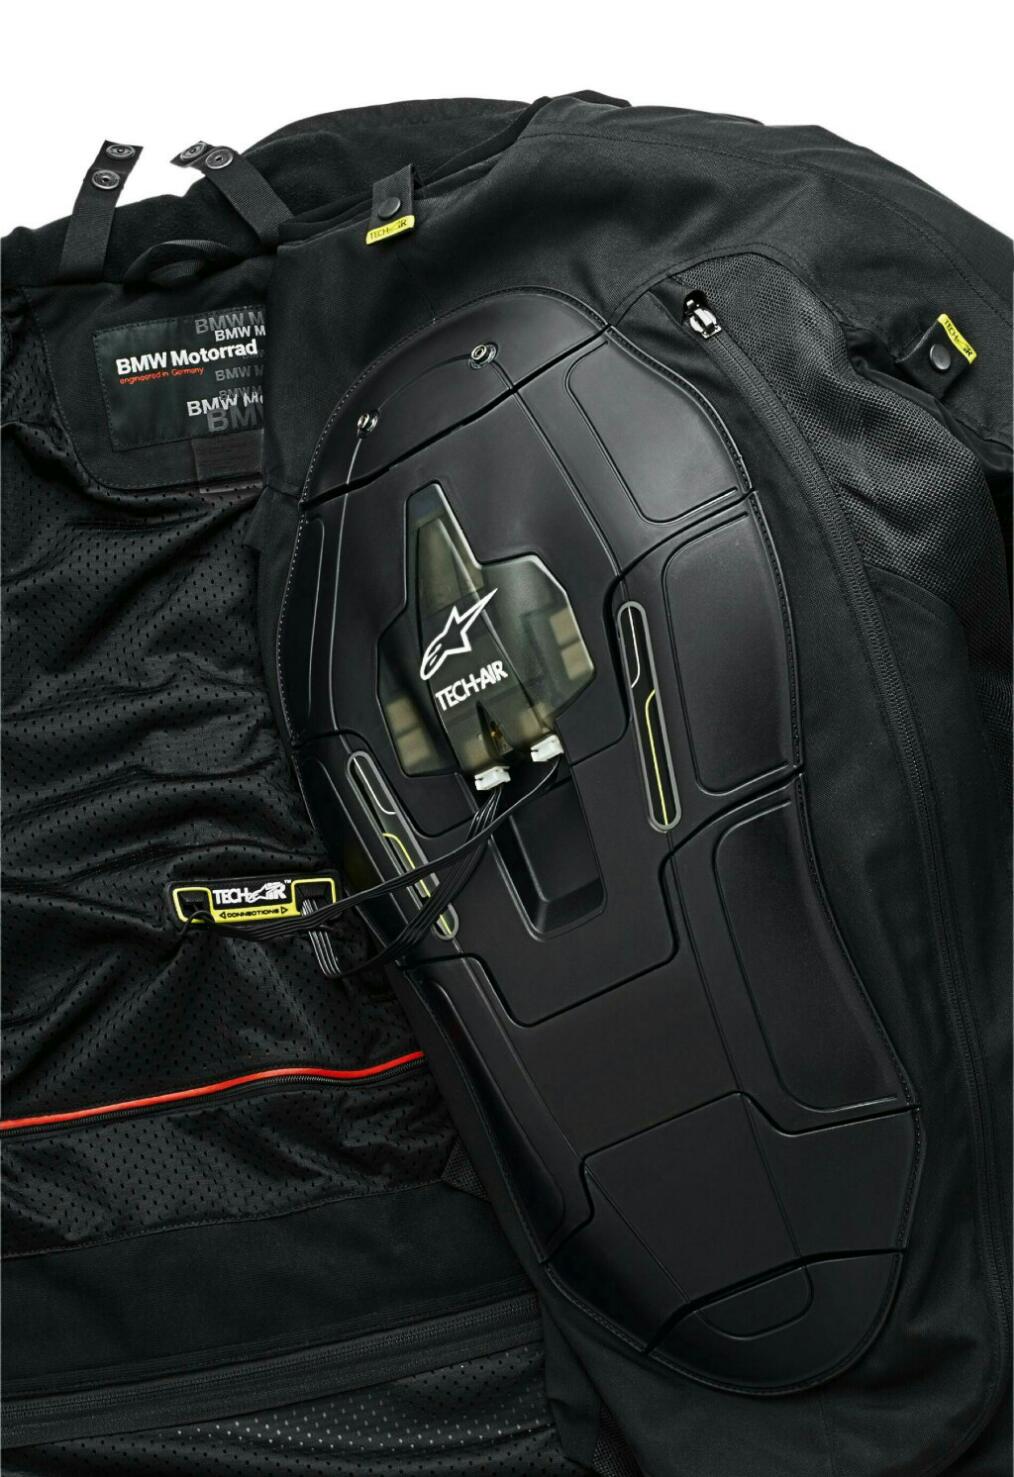 BMW Alpinestars Airbag Jacket Design